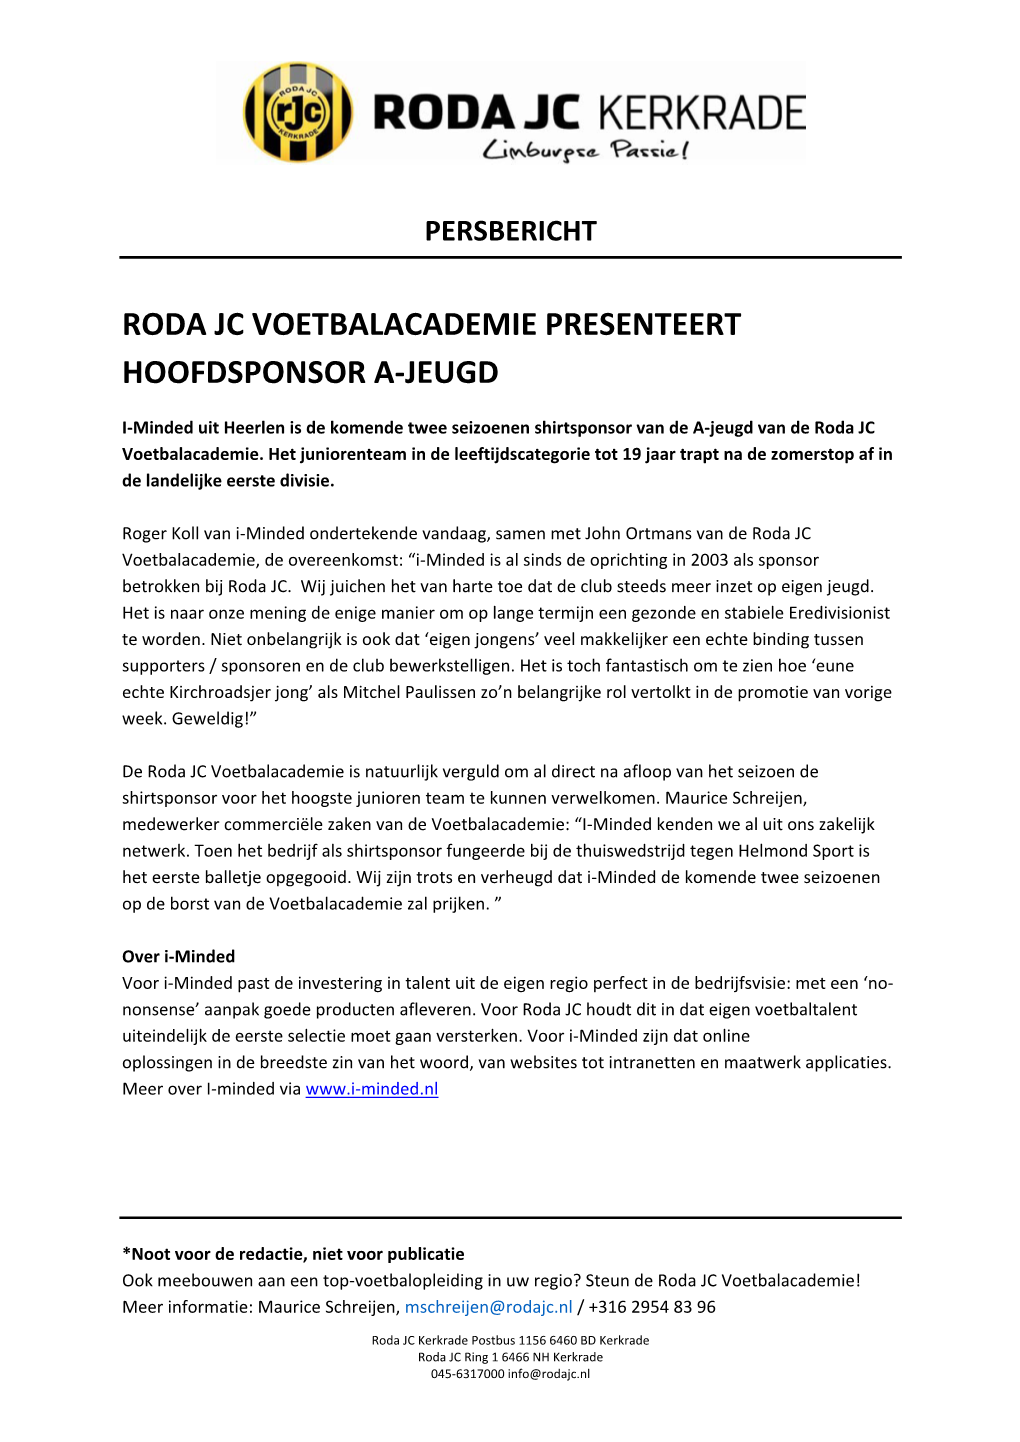 Roda Jc Voetbalacademie Presenteert Hoofdsponsor A-Jeugd